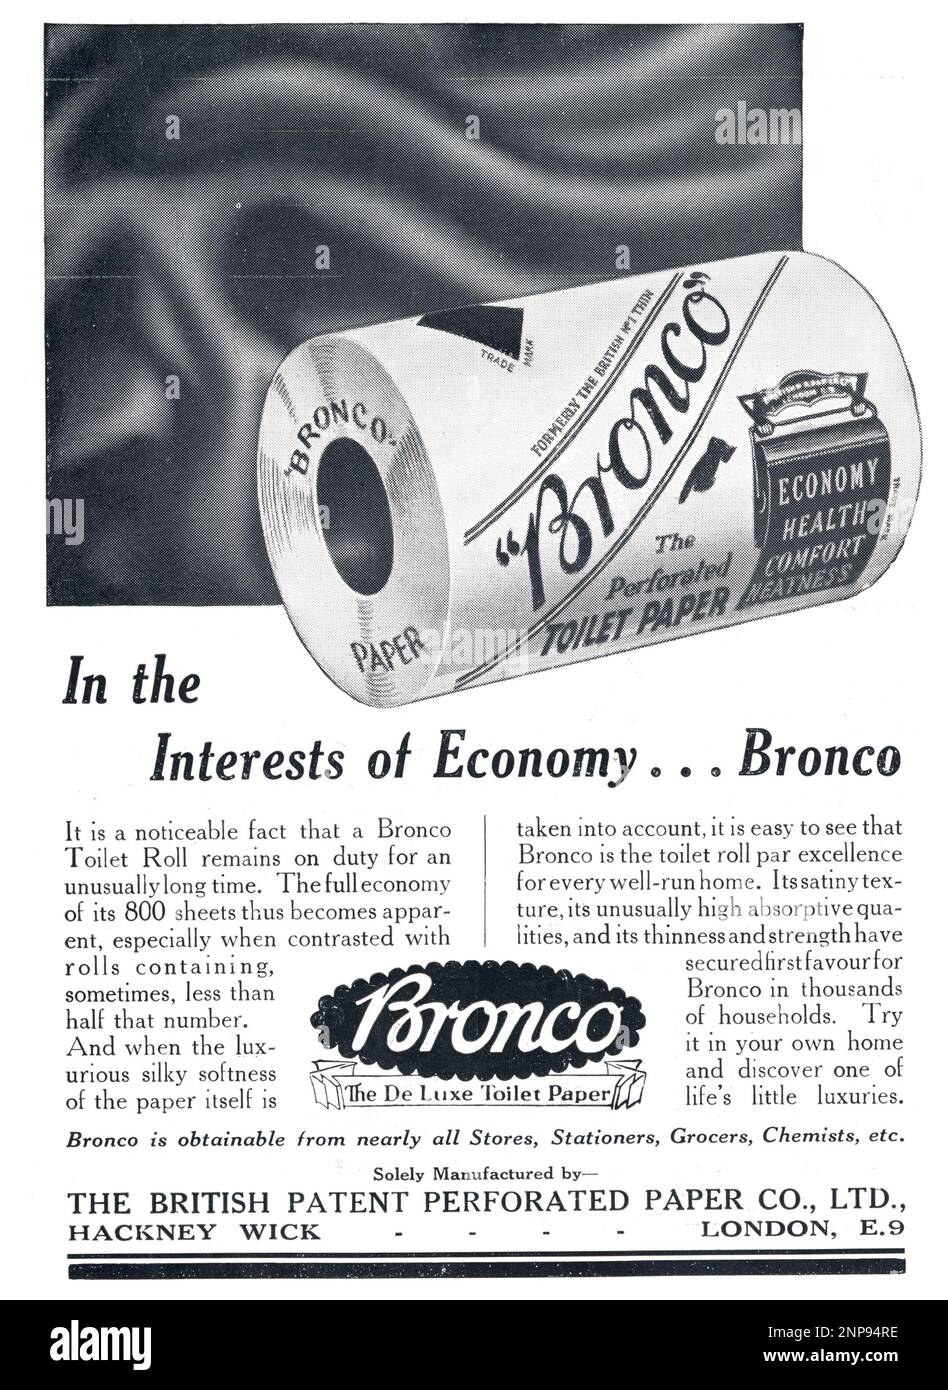 Die Sphäre war eine unbeschämte London-zentrierte Woche, oder die illustrierte Weekly des Empire. Anzeige von 1935. Bronco Toilettenpapier - im Interesse der Wirtschaft! De Luxe Toilettenpapier, British Perforated Paper Company, Hackney Wick. Stockfoto